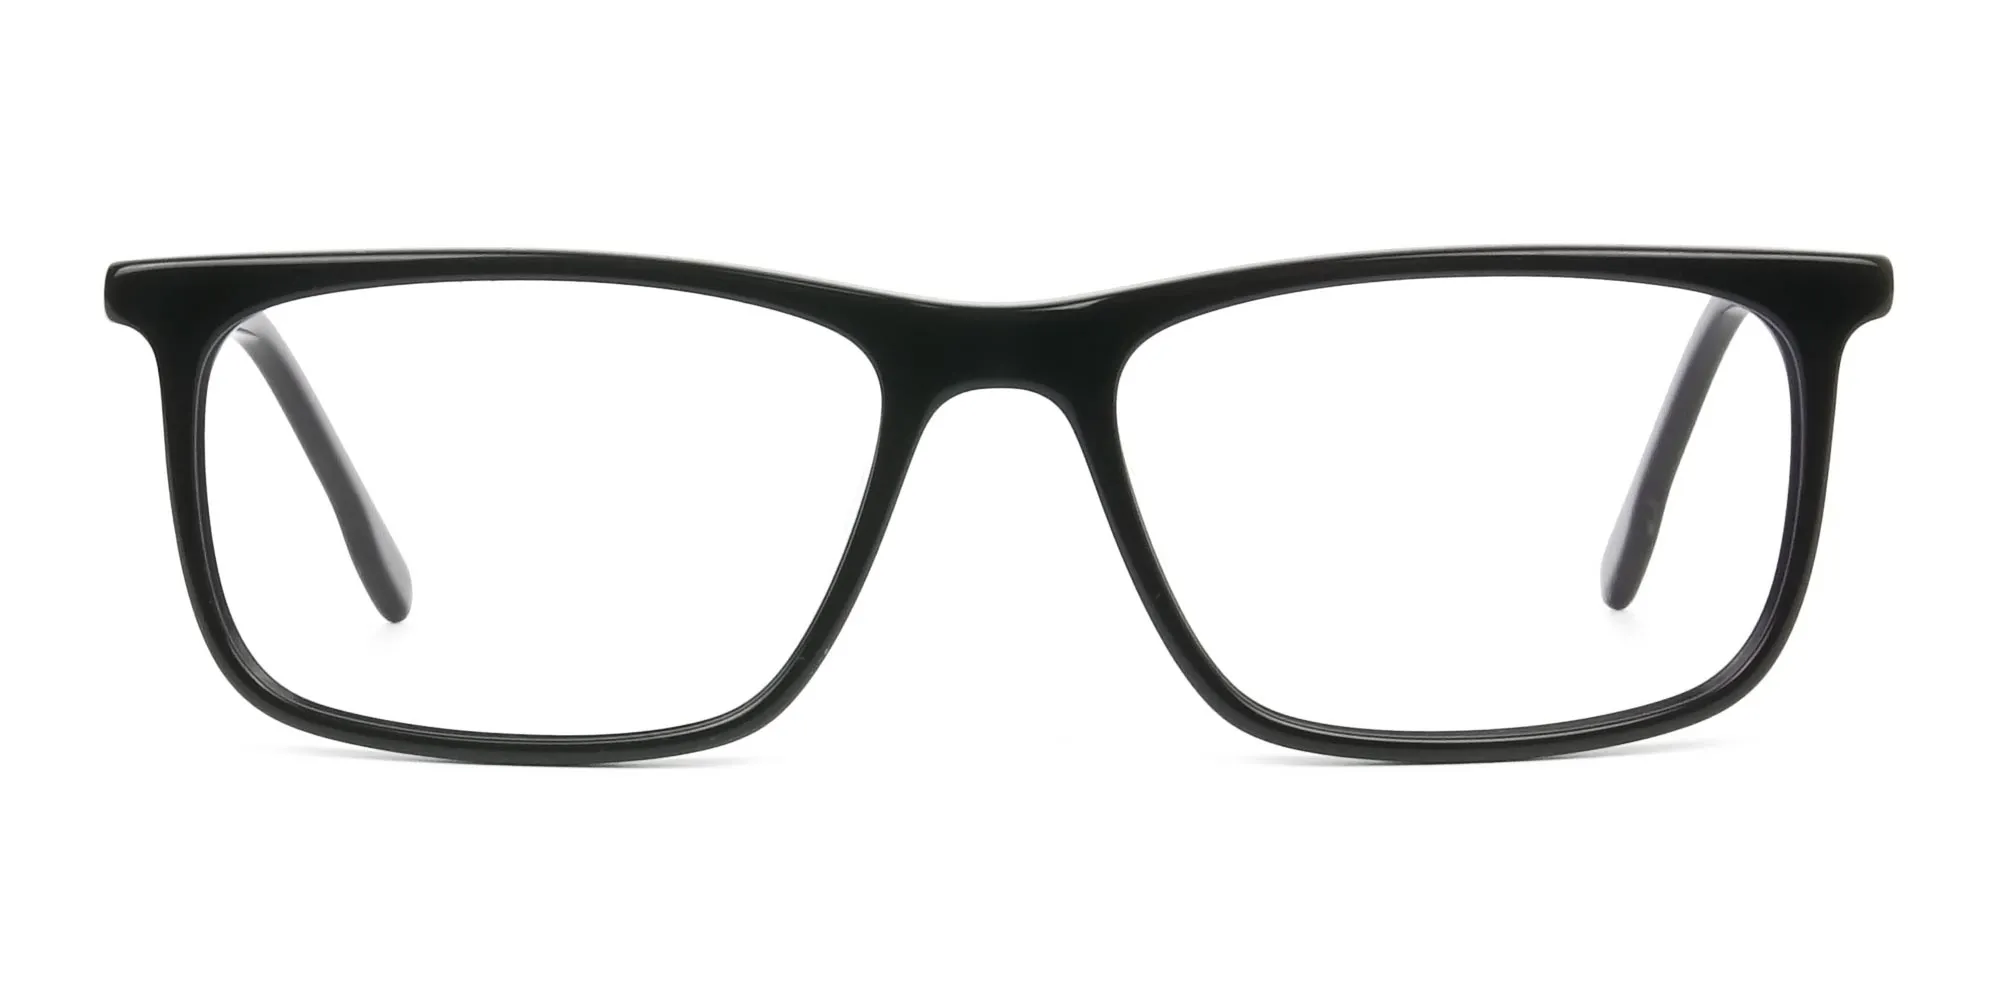 Black Acetate Spectacles in Rectangular - 2